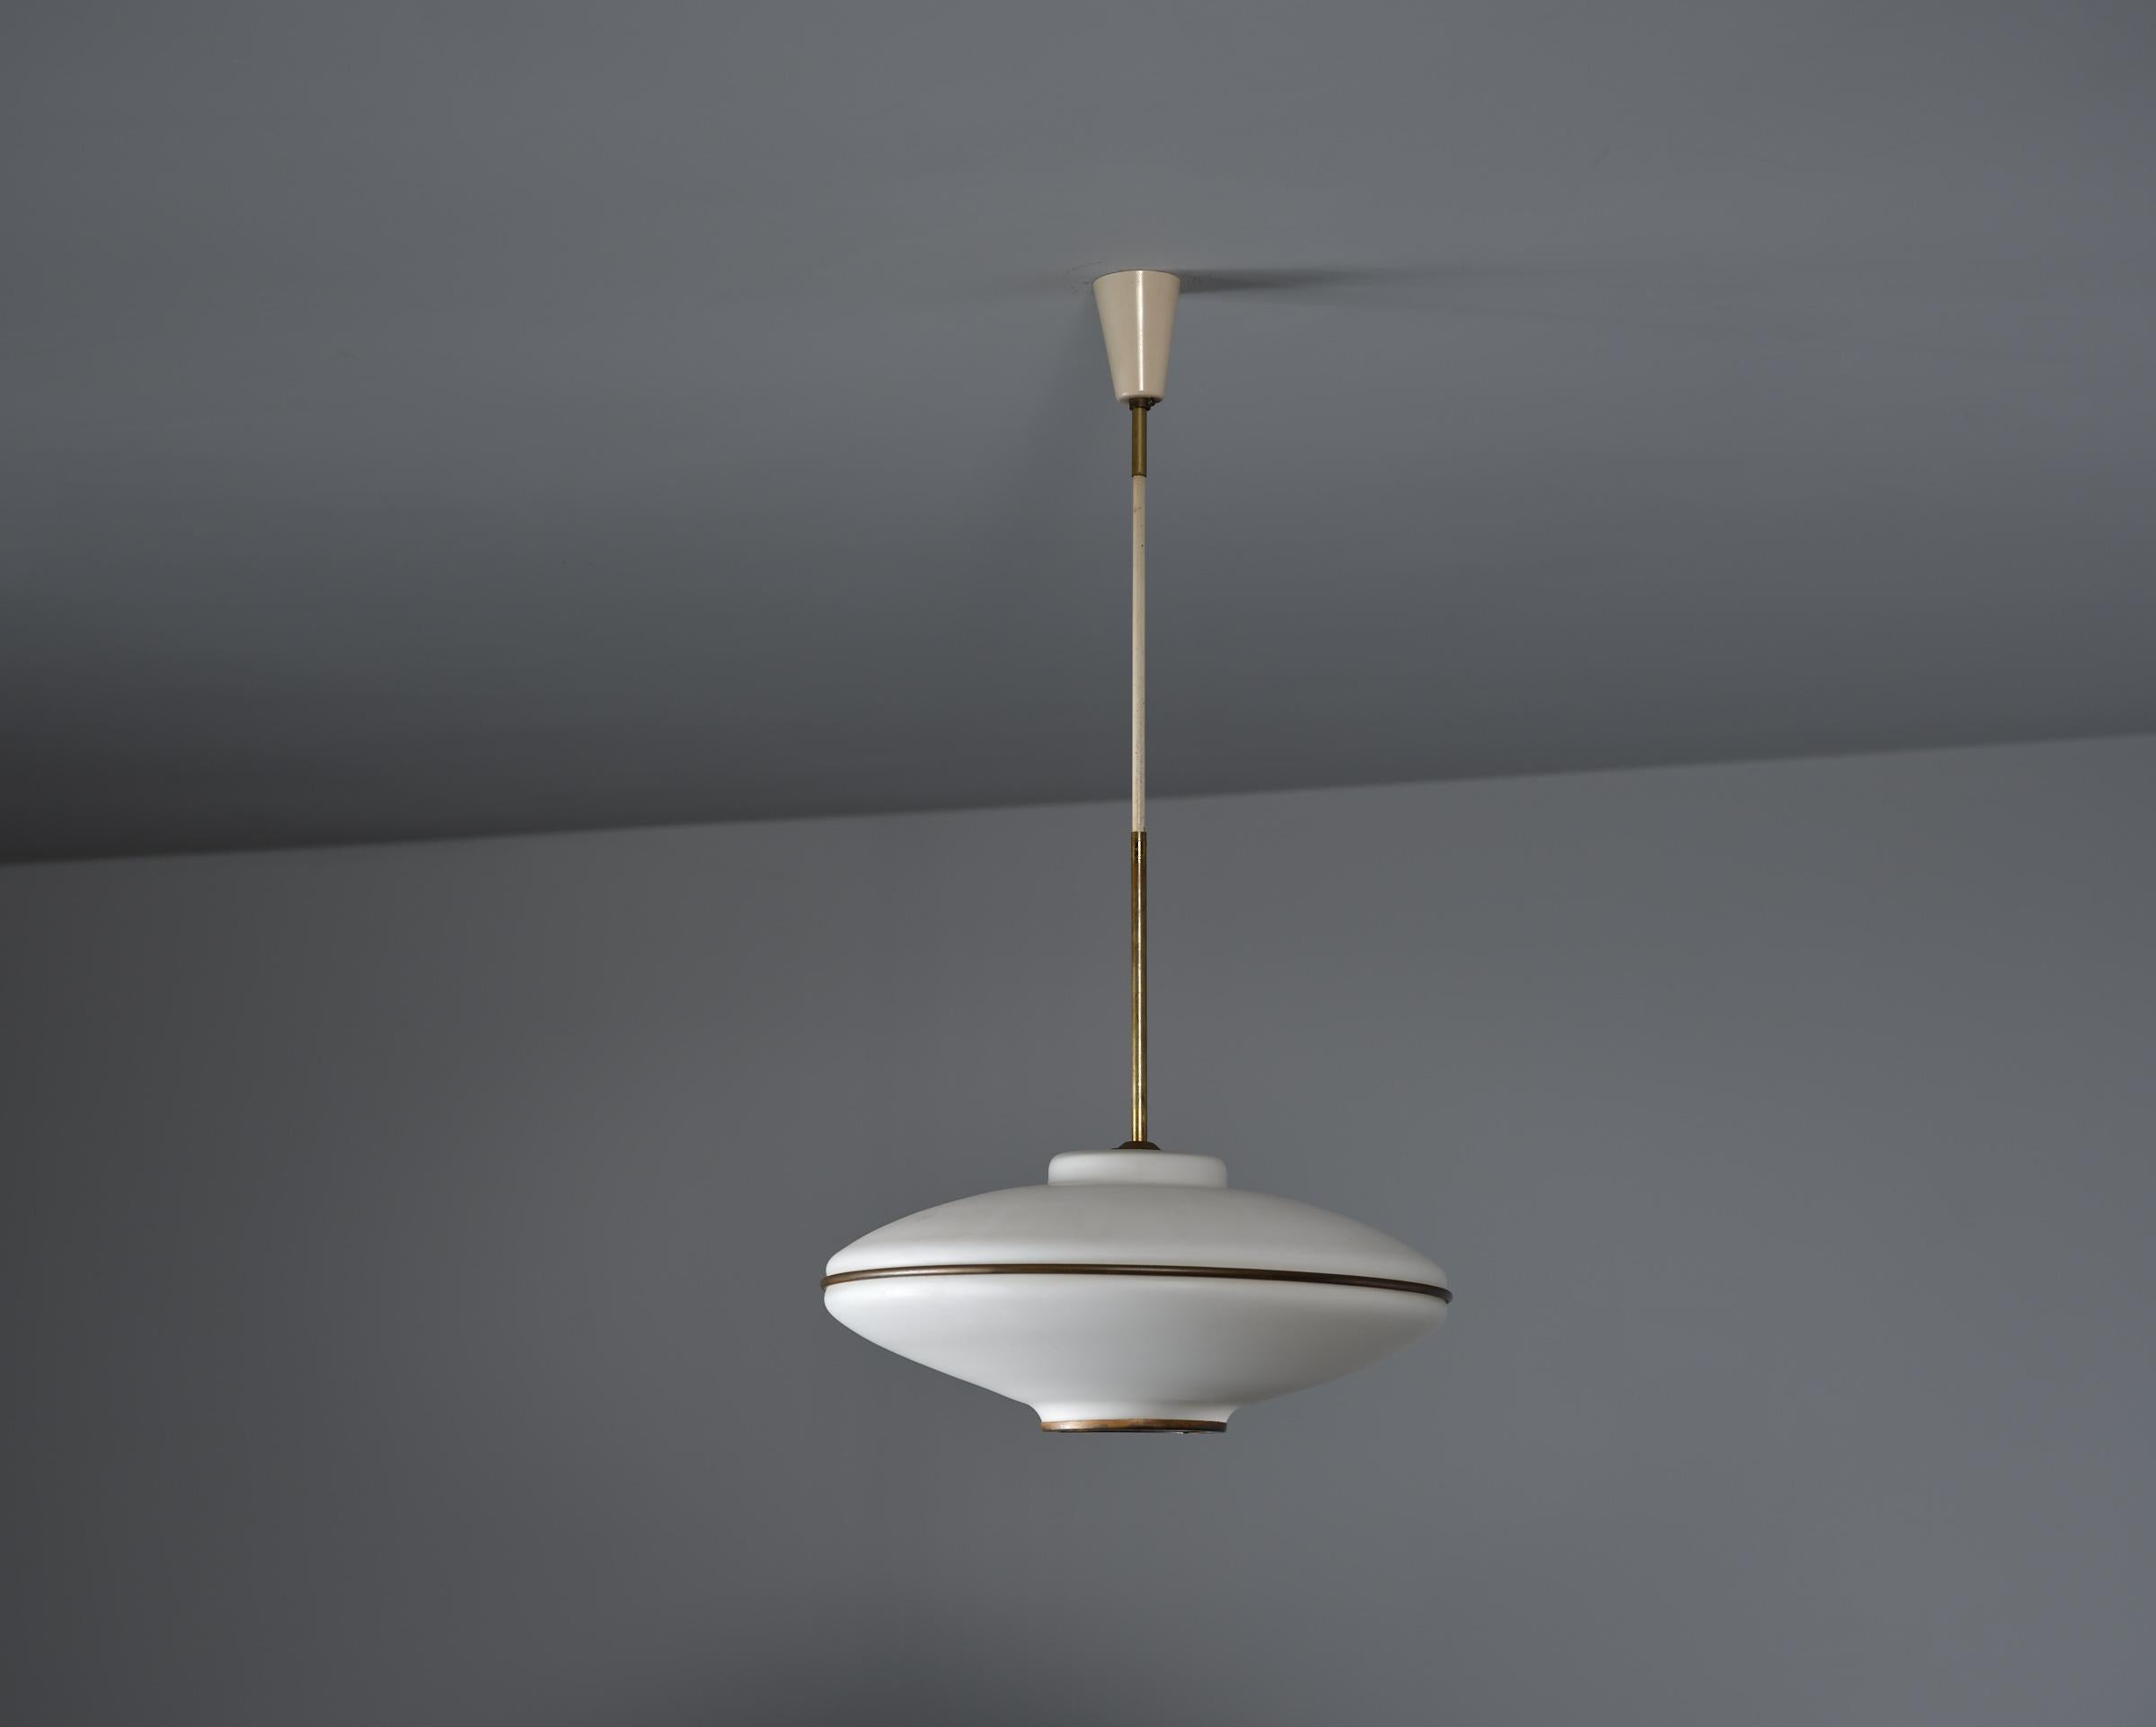 Mid-Century Modern Italian Flying Saucer Pendant Lamp - Vintage 1950s Modernist Ceiling Light For Sale